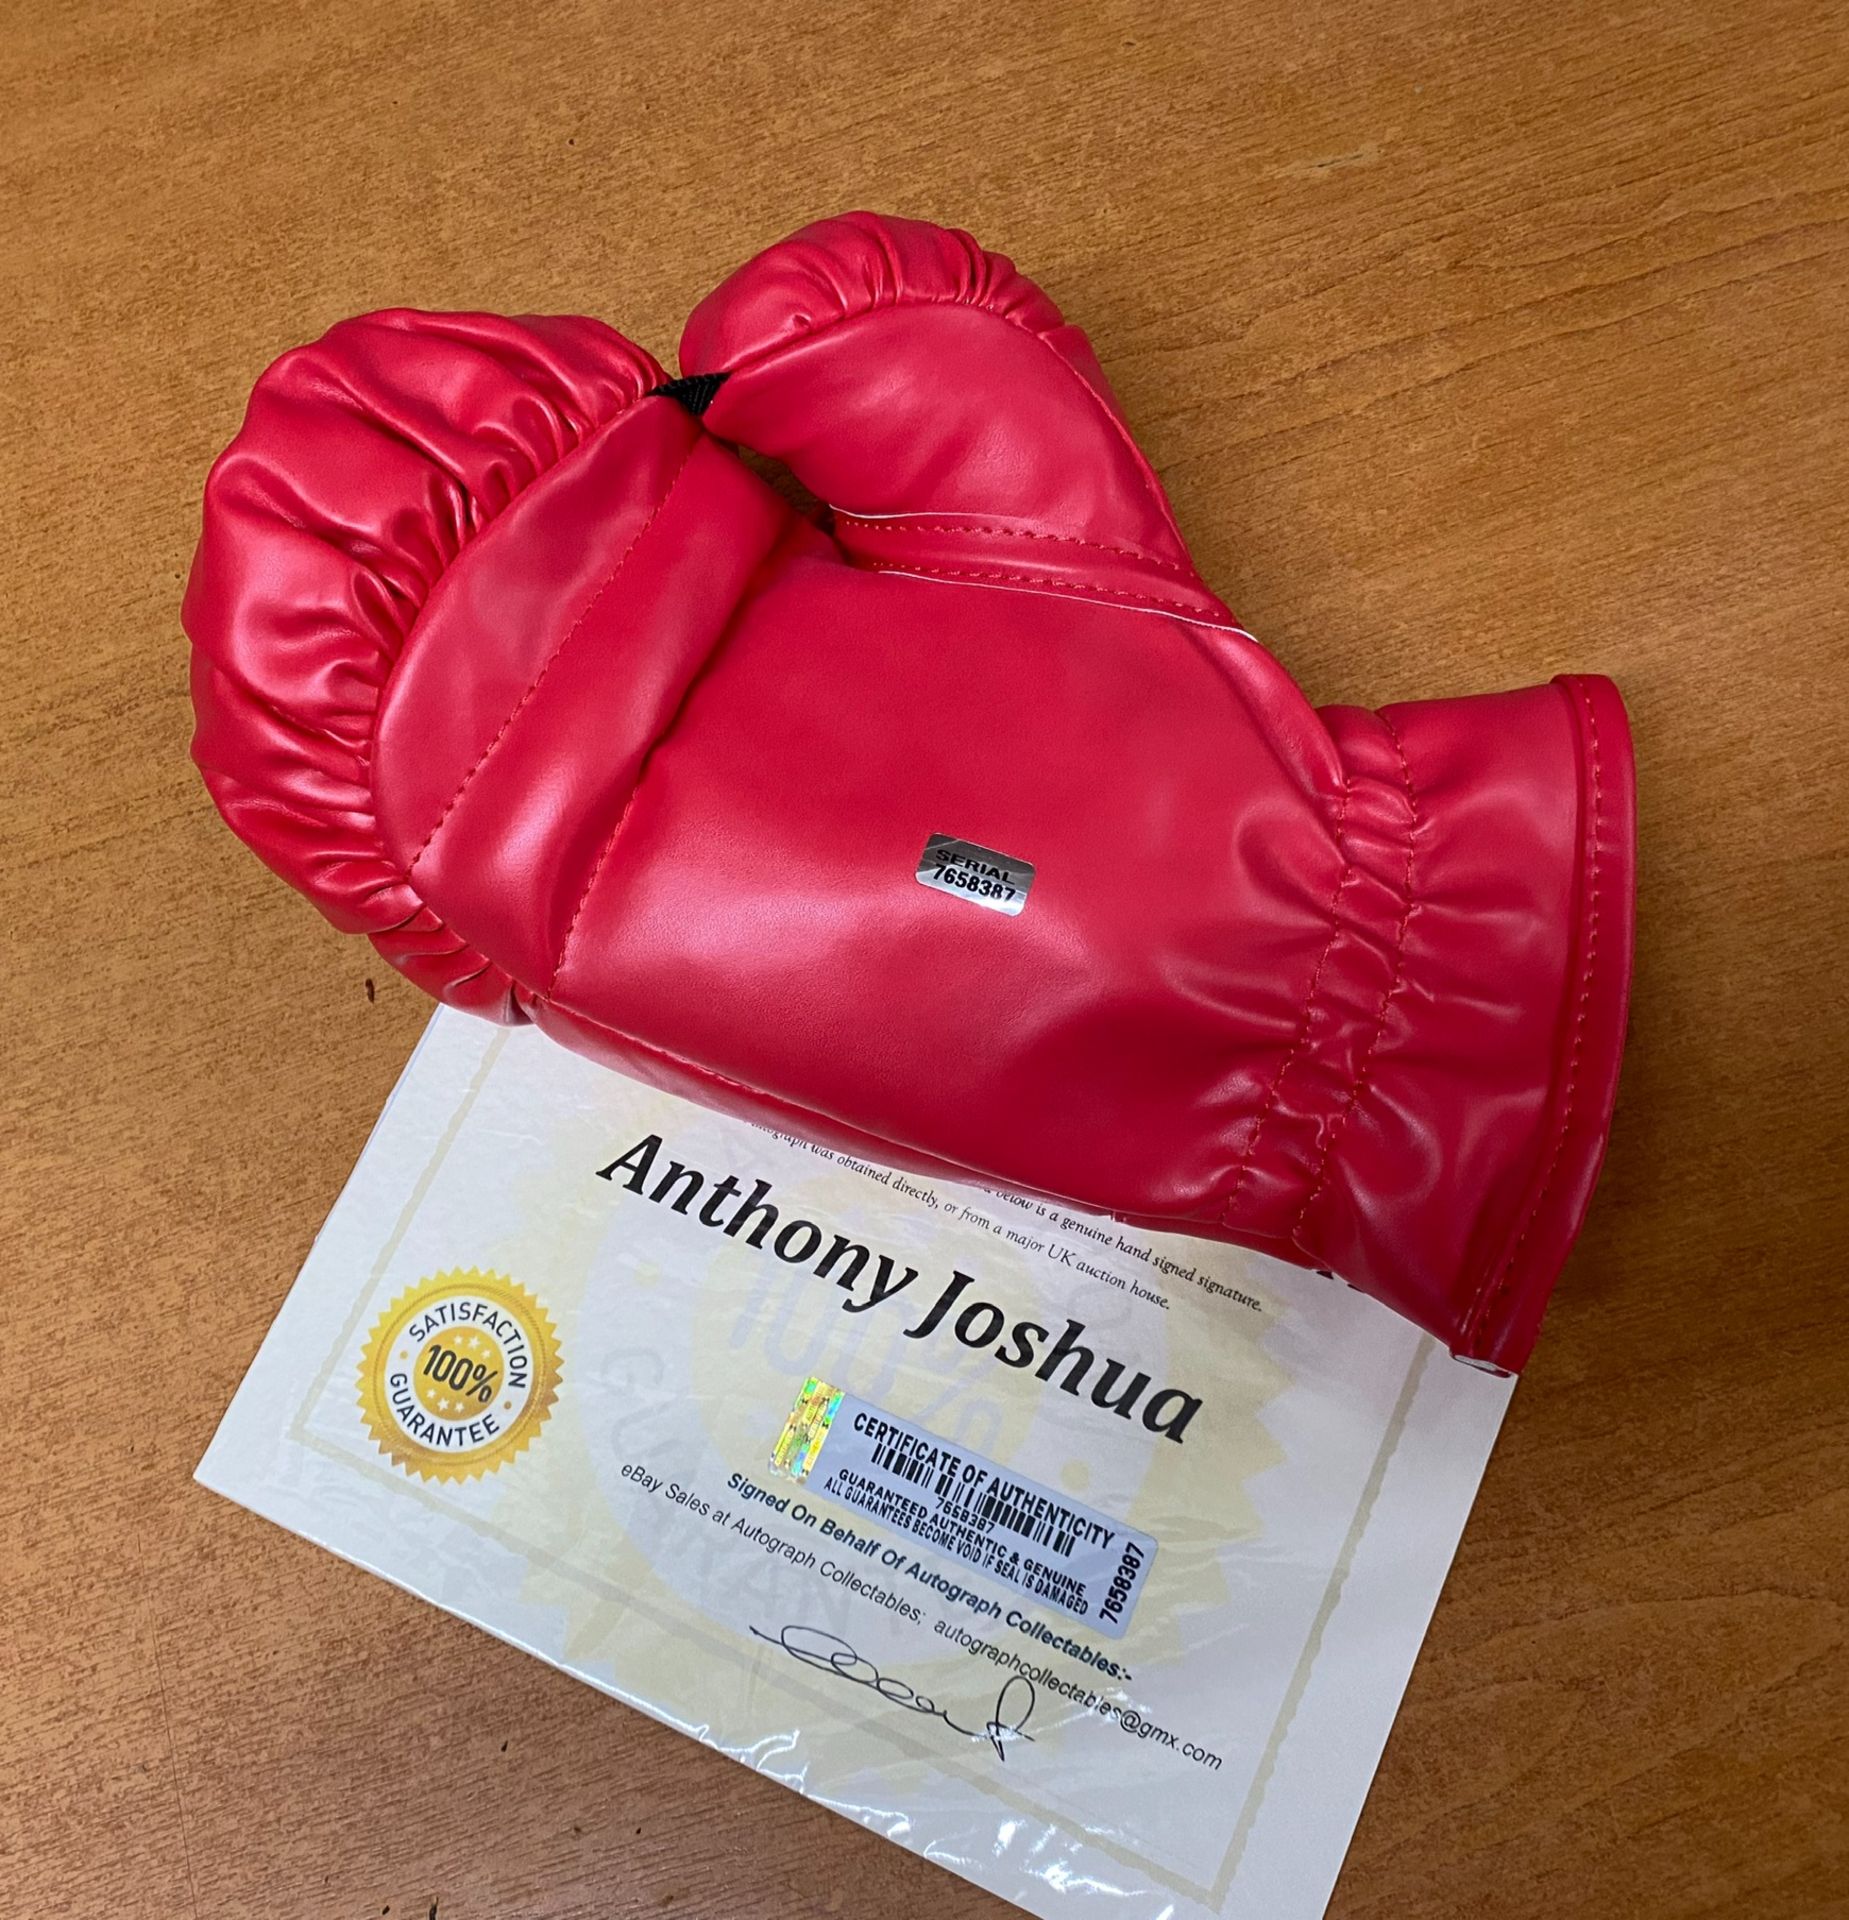 Anthony Joshua Signed Boxing Glove - Image 3 of 3